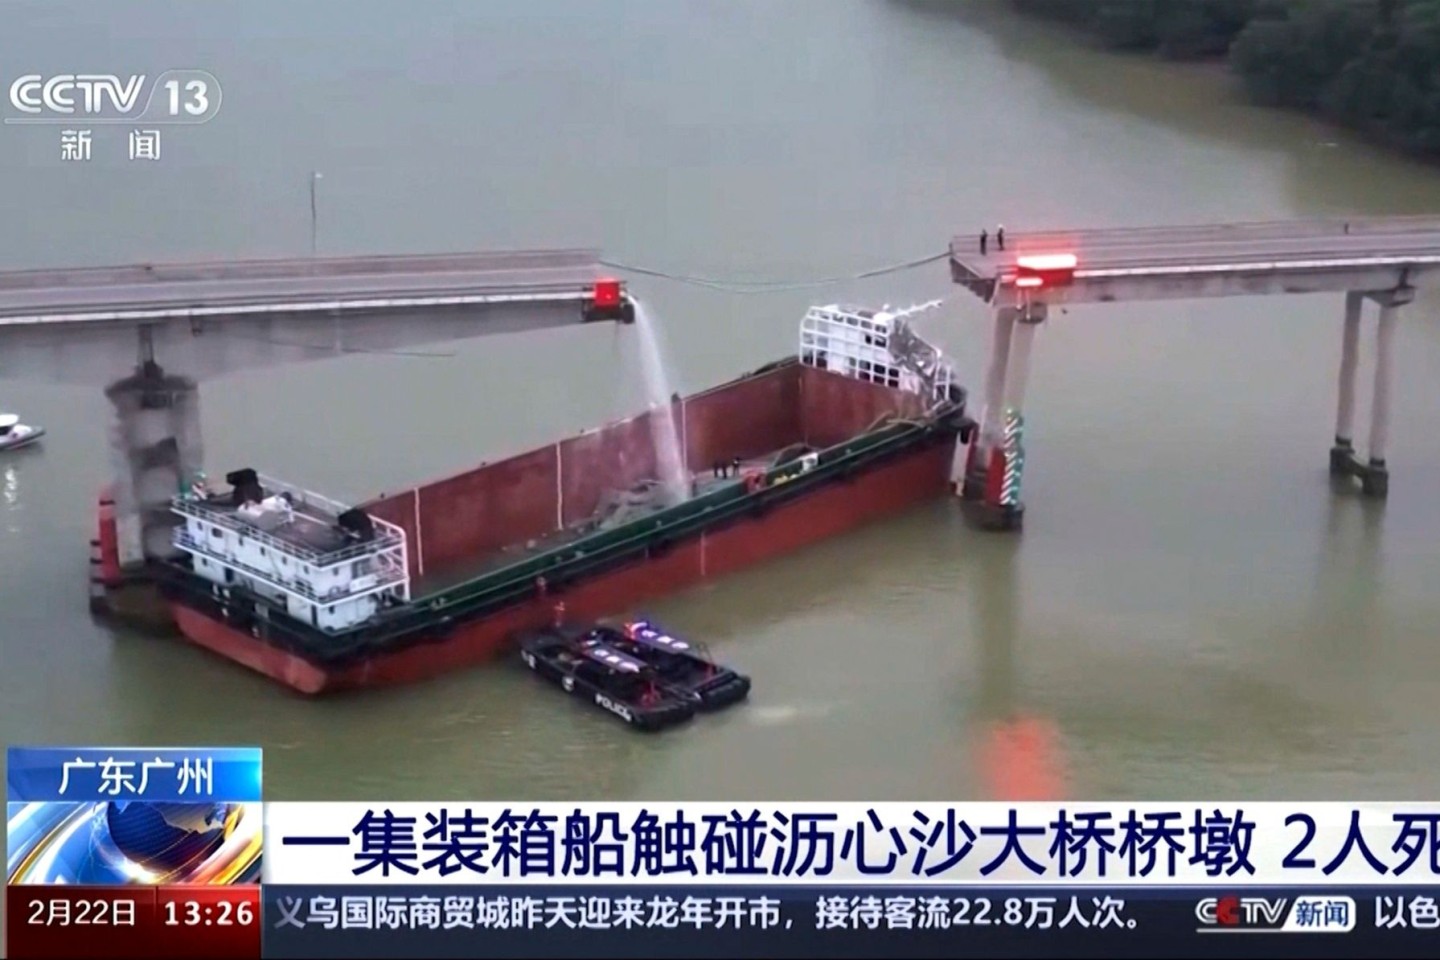 Vorläufigen Ermittlungen zufolge stürzten zwei Fahrzeuge ins Wasser, drei weitere fielen auf das Schiff.